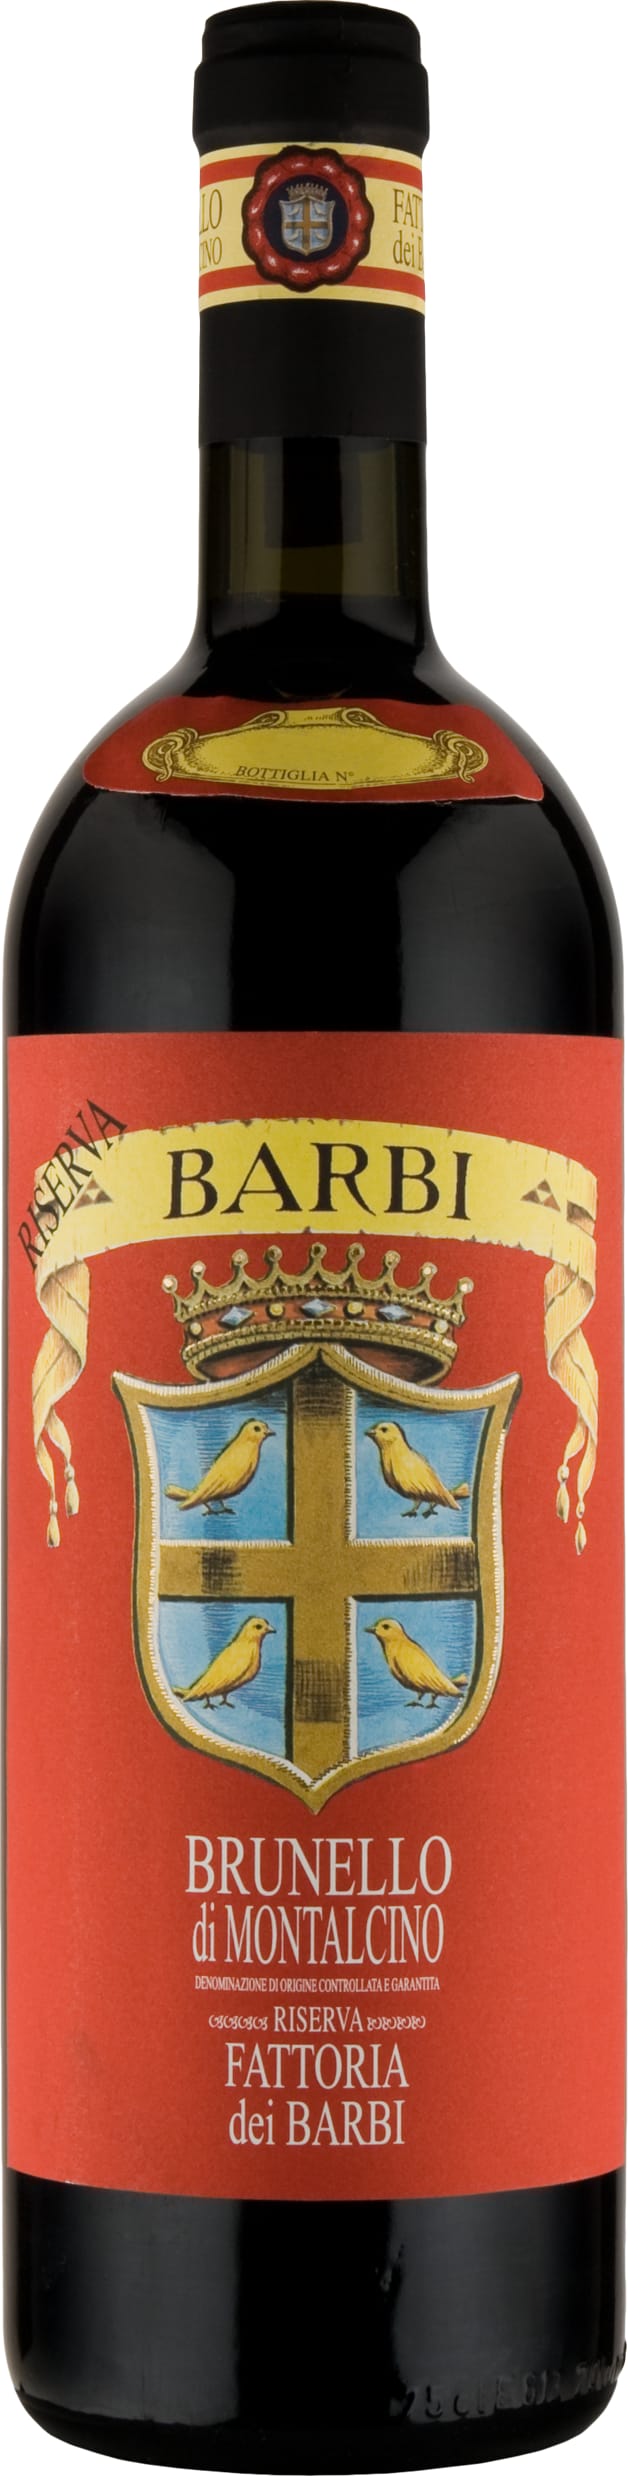 Fattoria dei Barbi Brunello di Montalcino Riserva 2015 75cl - Buy Fattoria dei Barbi Wines from GREAT WINES DIRECT wine shop